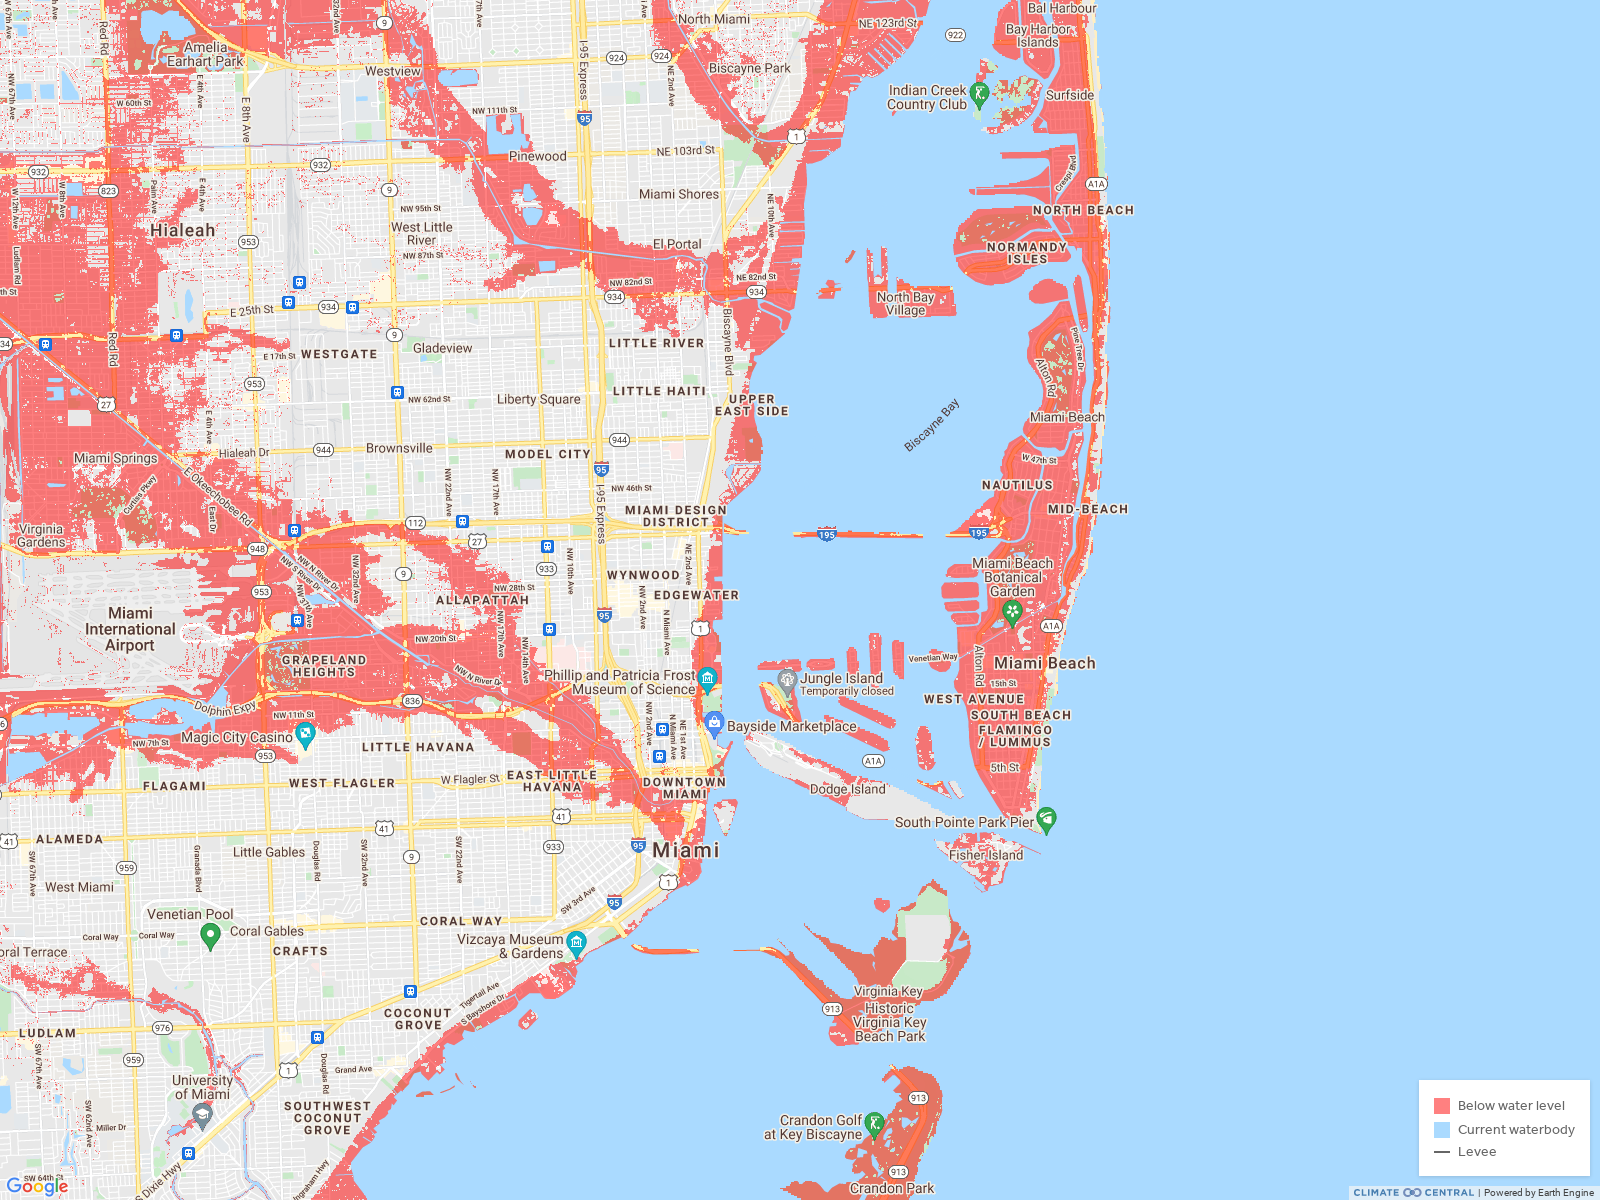 Miami w/ 6 ft rise in sea level